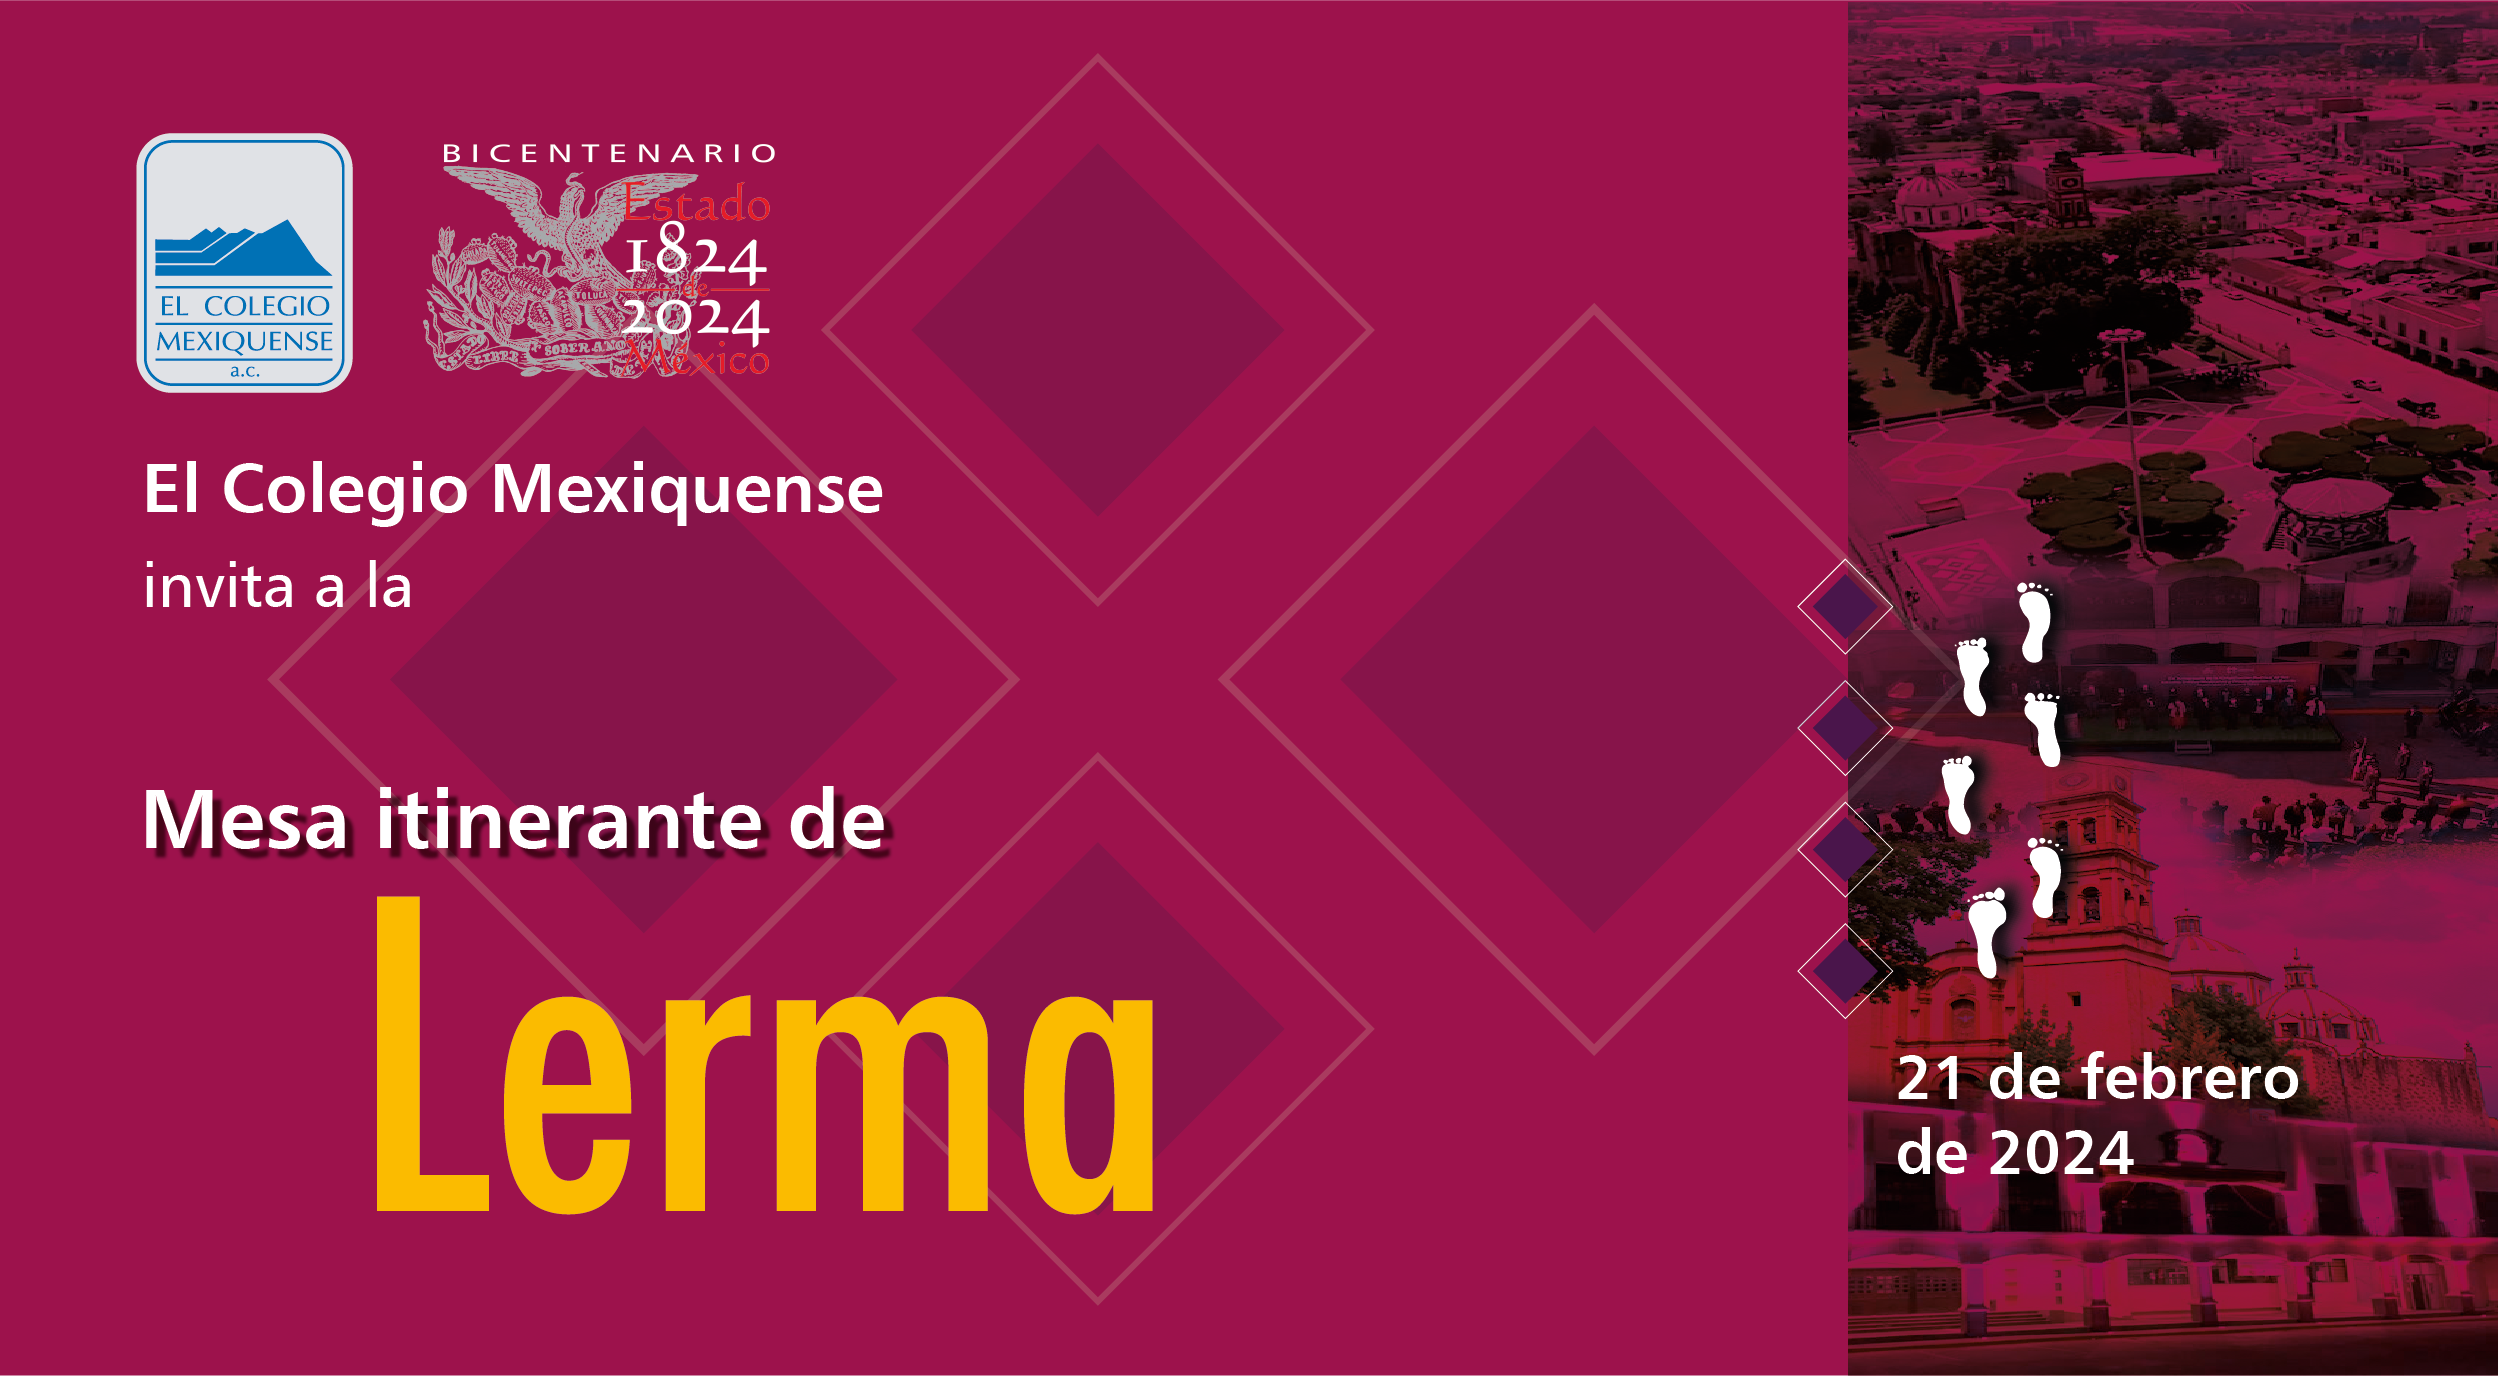 Organiza El Colegio Mexiquense Mesa Itinerante dedicada a Lerma, el miércoles 22 de febrero